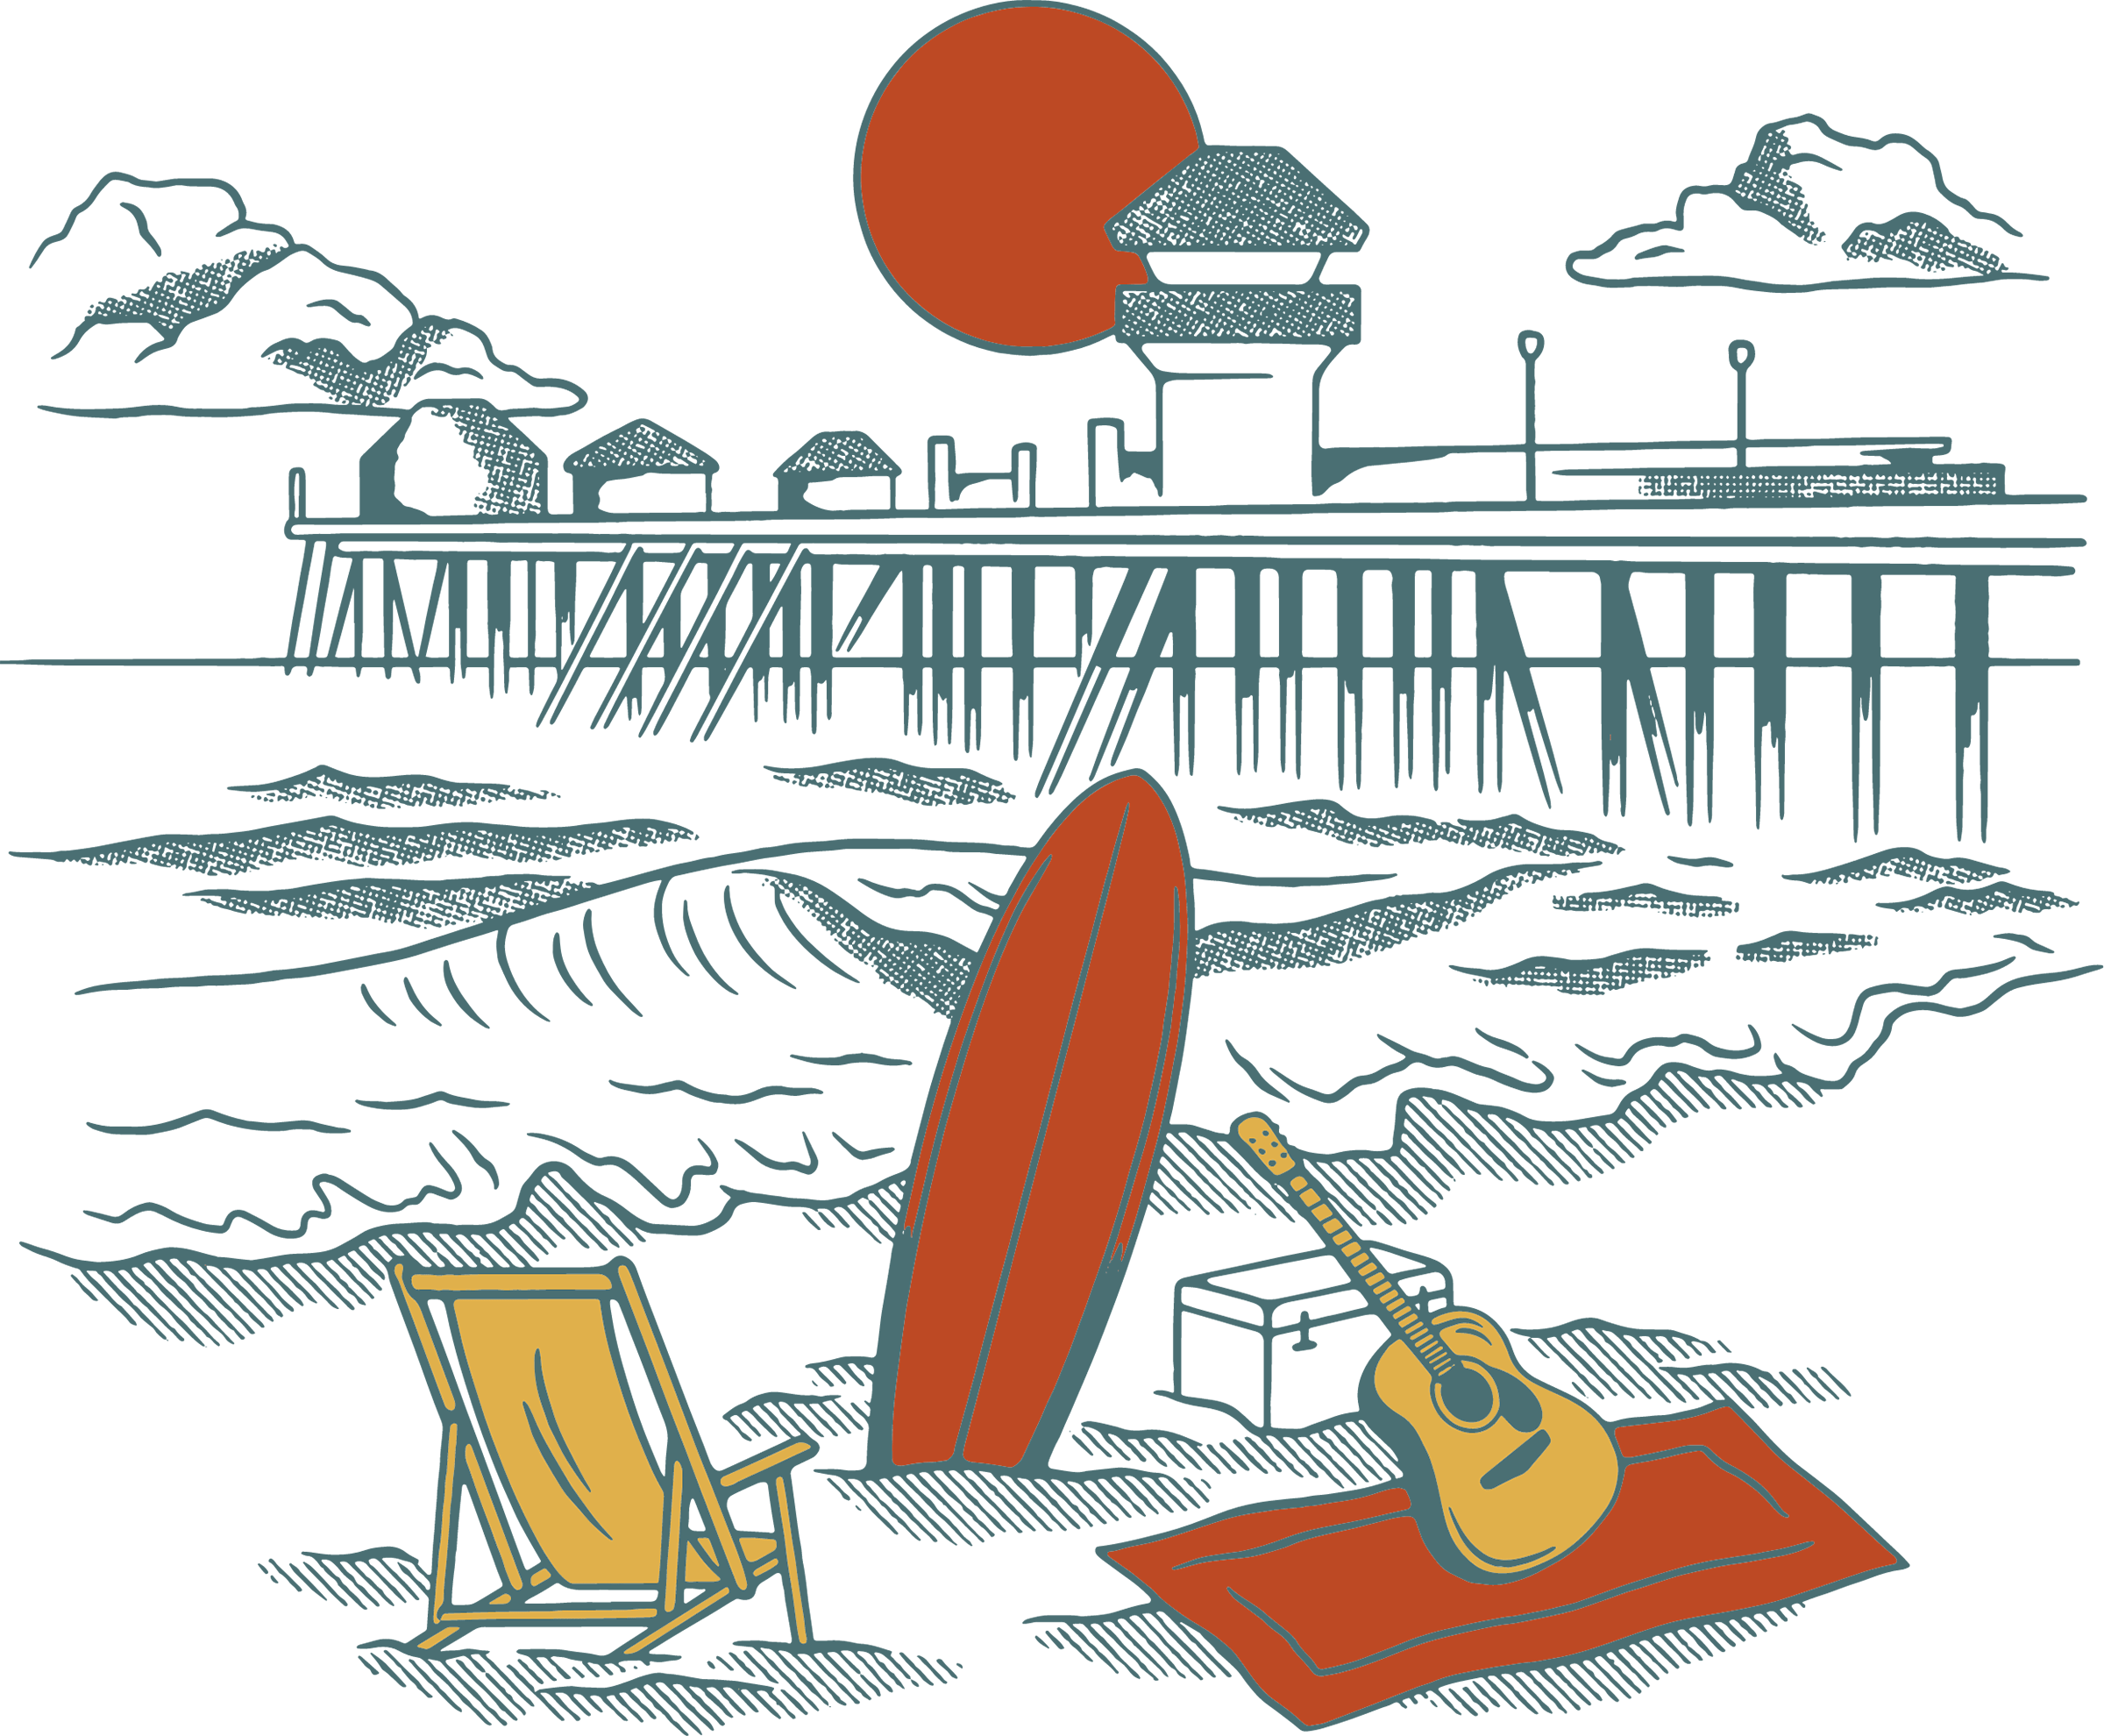 Oiseaux et jetée en arrière-plan sur la plage avec une guitare